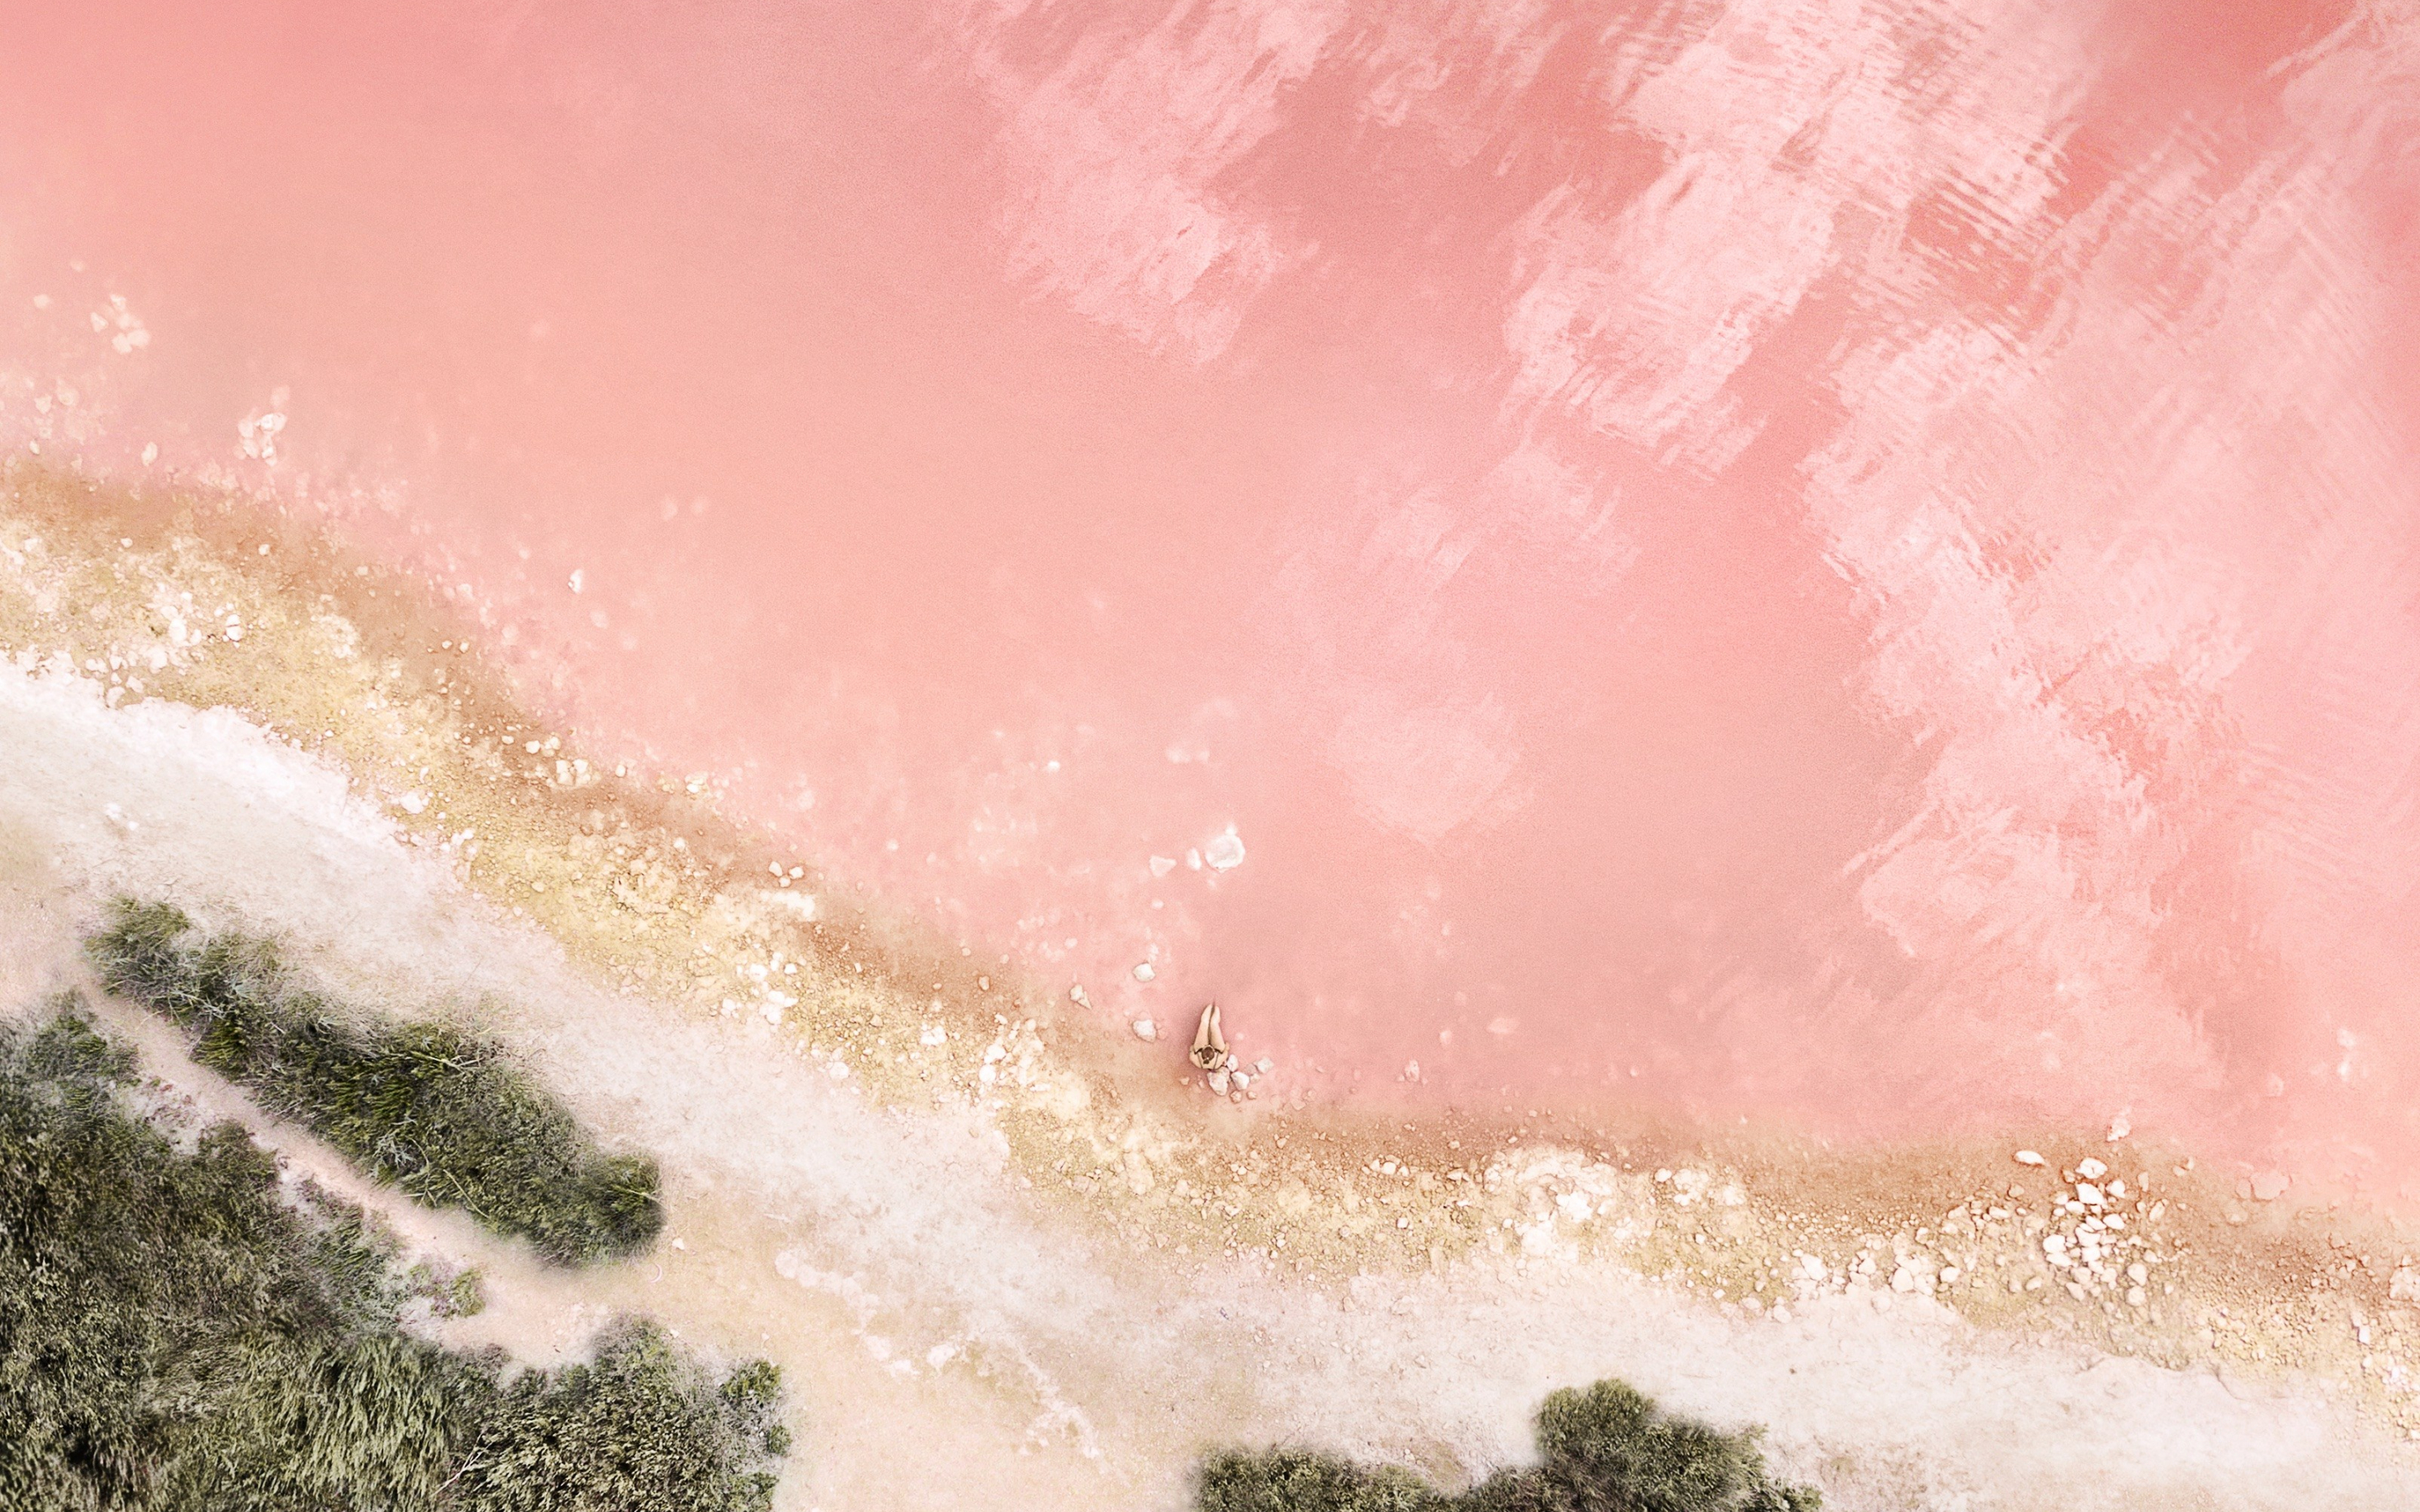 Ios, ipad, beach, aerial view, stock, 2880x1800 wallpaper